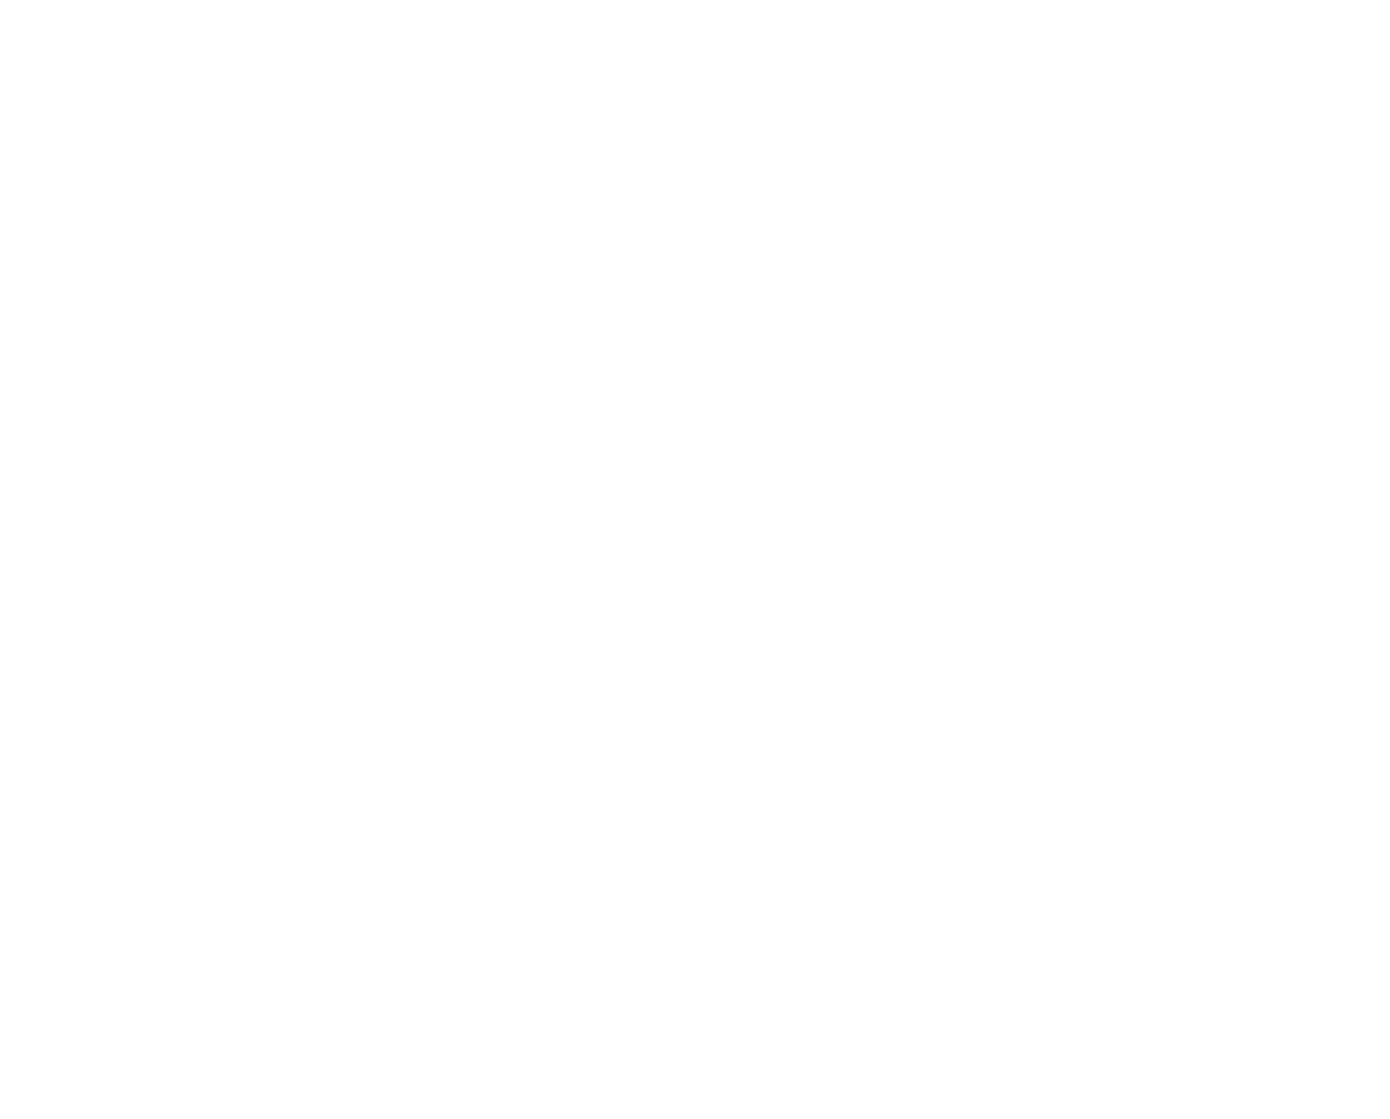 Логотип FitChef, объединяющий современные технологии и экспертизу в области кулинарии для составления индивидуального плана питания. Изображение мускулистого шеф-повара символизирует профессионализм и знание дела, а ассоциация с нейросетями указывает на инновационный подход к диетологии и здоровому образу жизни. Такой логотип подчеркивает, что FitChef - это ваш личный диетолог и шеф-повар, работающий на основе AI для создания оптимального рациона питания прямо на вашей кухне